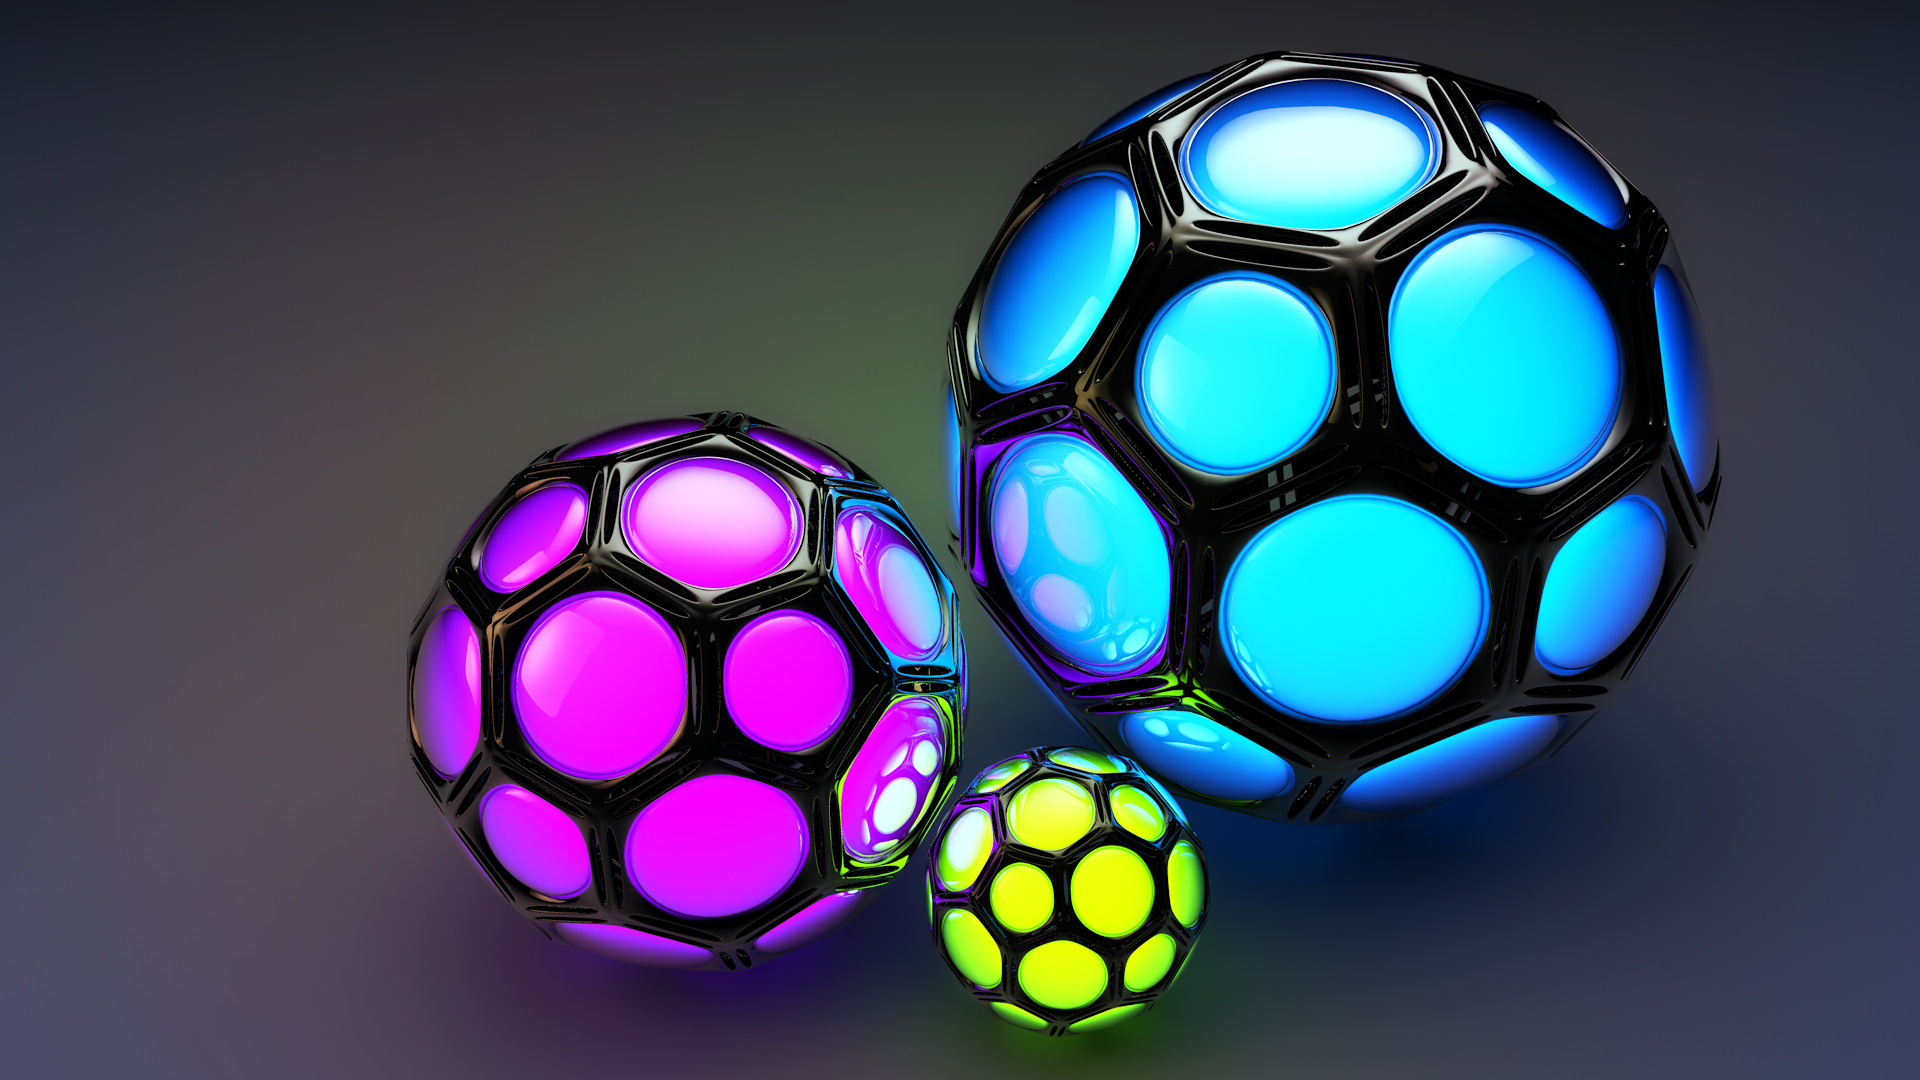 3dボール壁紙,サッカーボール,紫の,光,球,フットボール